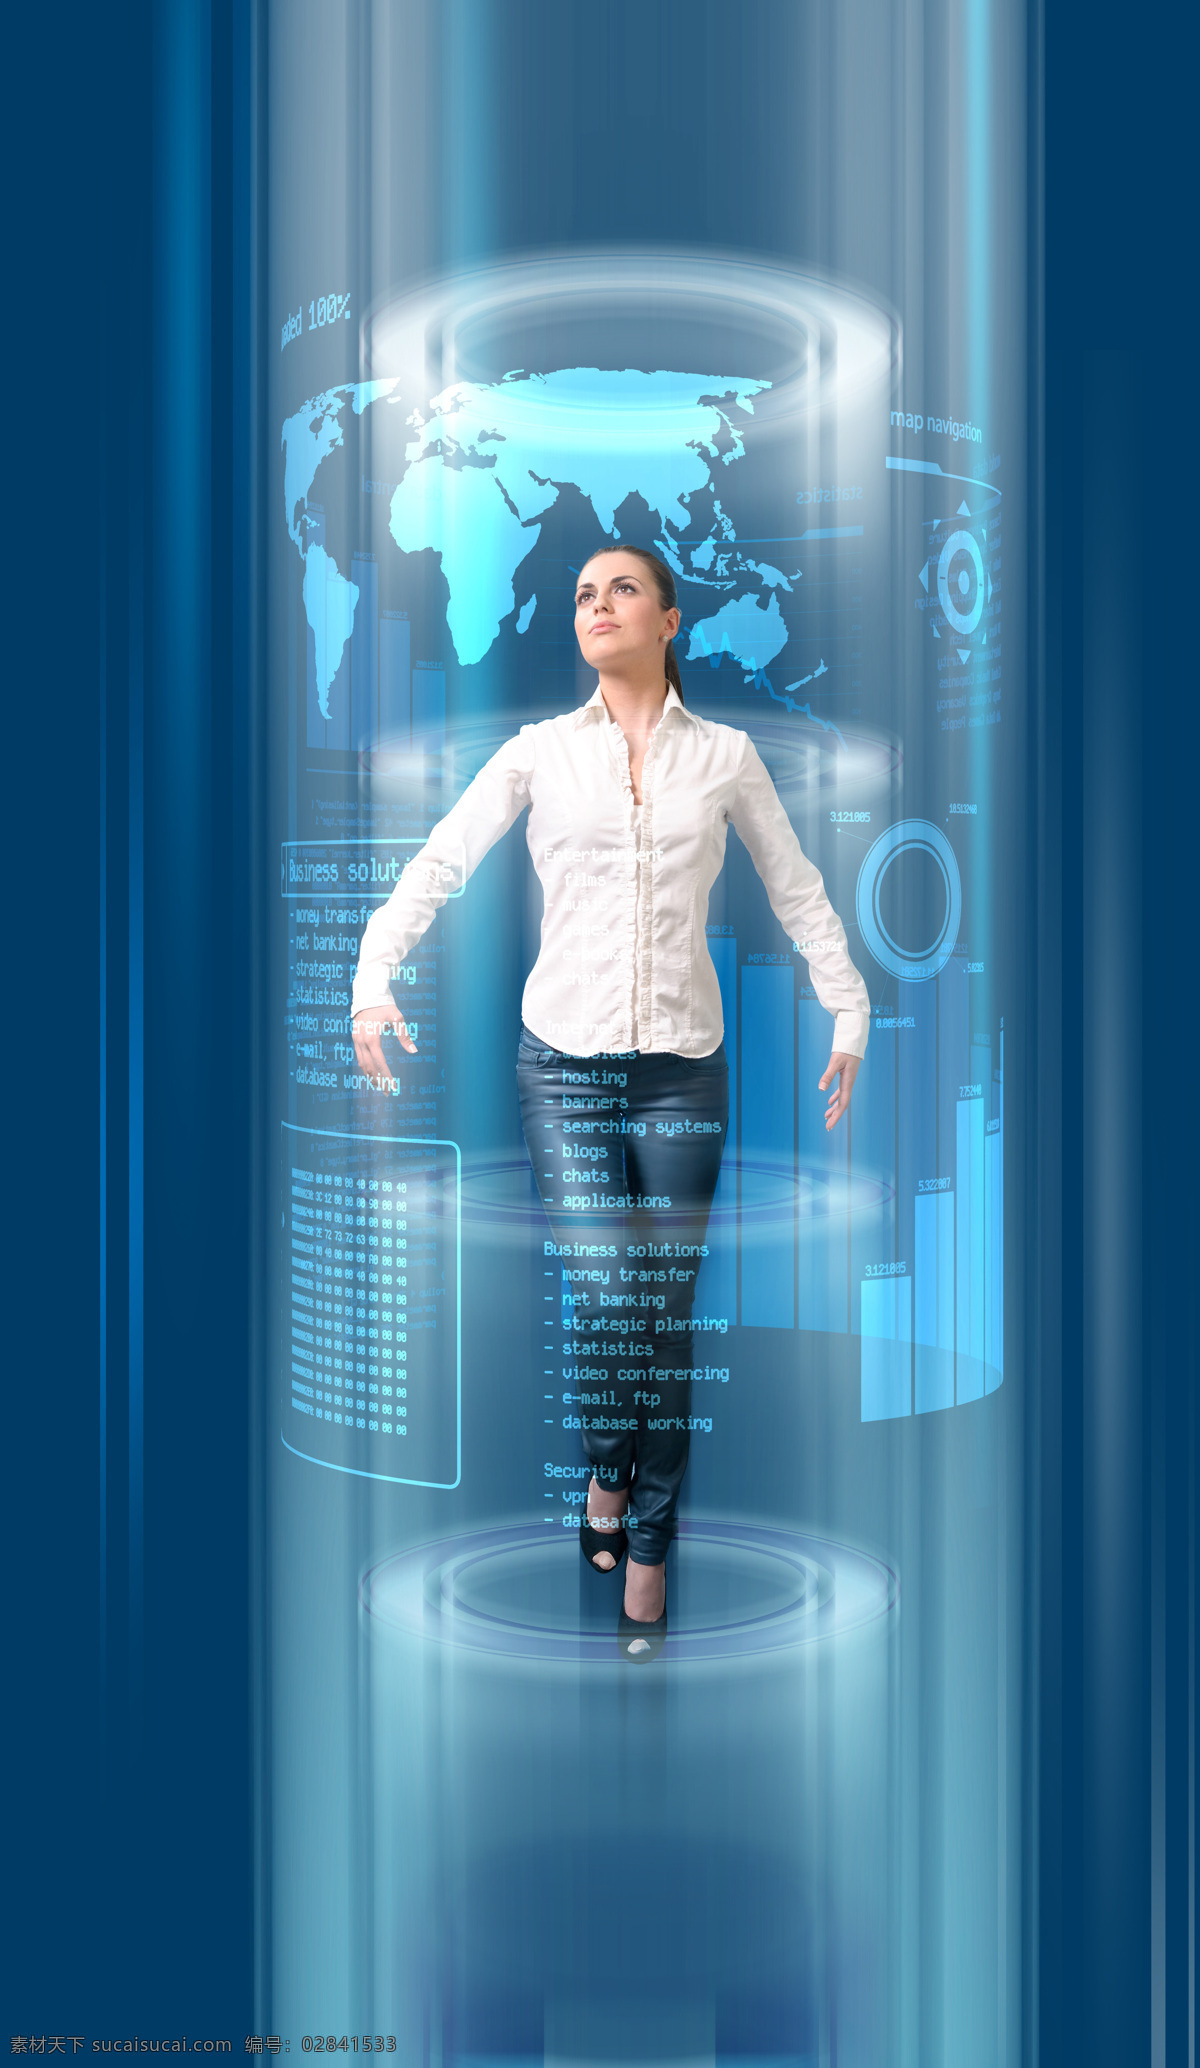 操作 高科技 职业女性 科技商务女人 外国女性 美女 商务女人 白领 科技 未来科技 高科技产品 地图 商务人士 人物图片